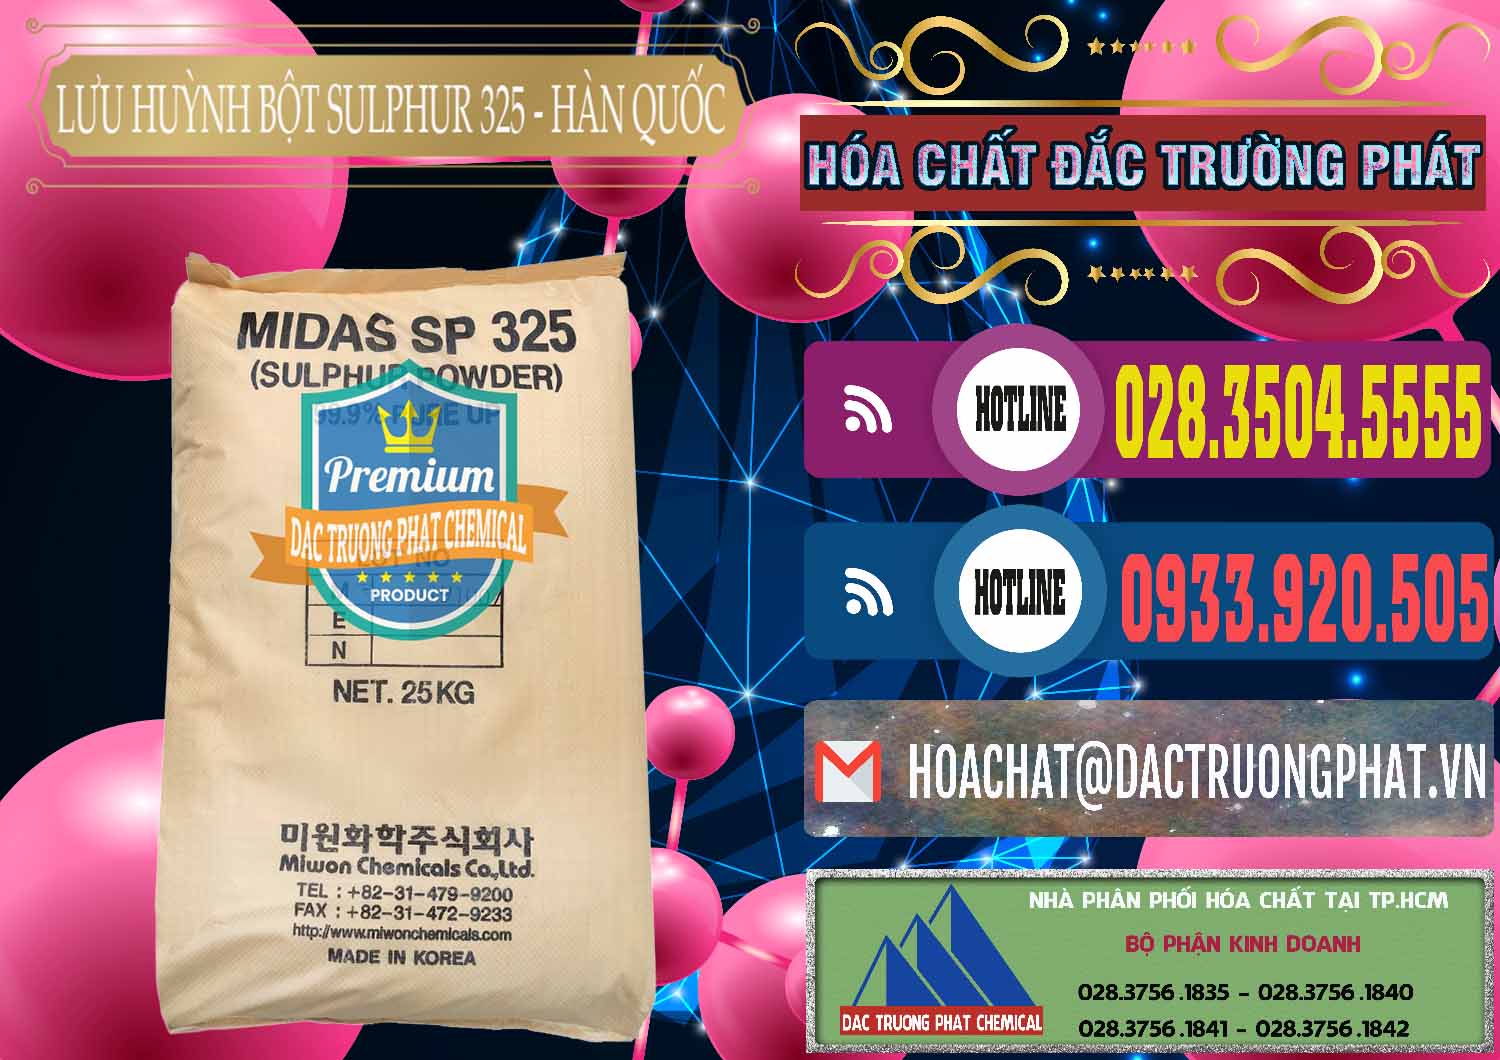 Công ty nhập khẩu - bán Lưu huỳnh Bột - Sulfur Powder Midas SP 325 Hàn Quốc Korea - 0198 - Công ty chuyên kinh doanh - cung cấp hóa chất tại TP.HCM - muabanhoachat.com.vn